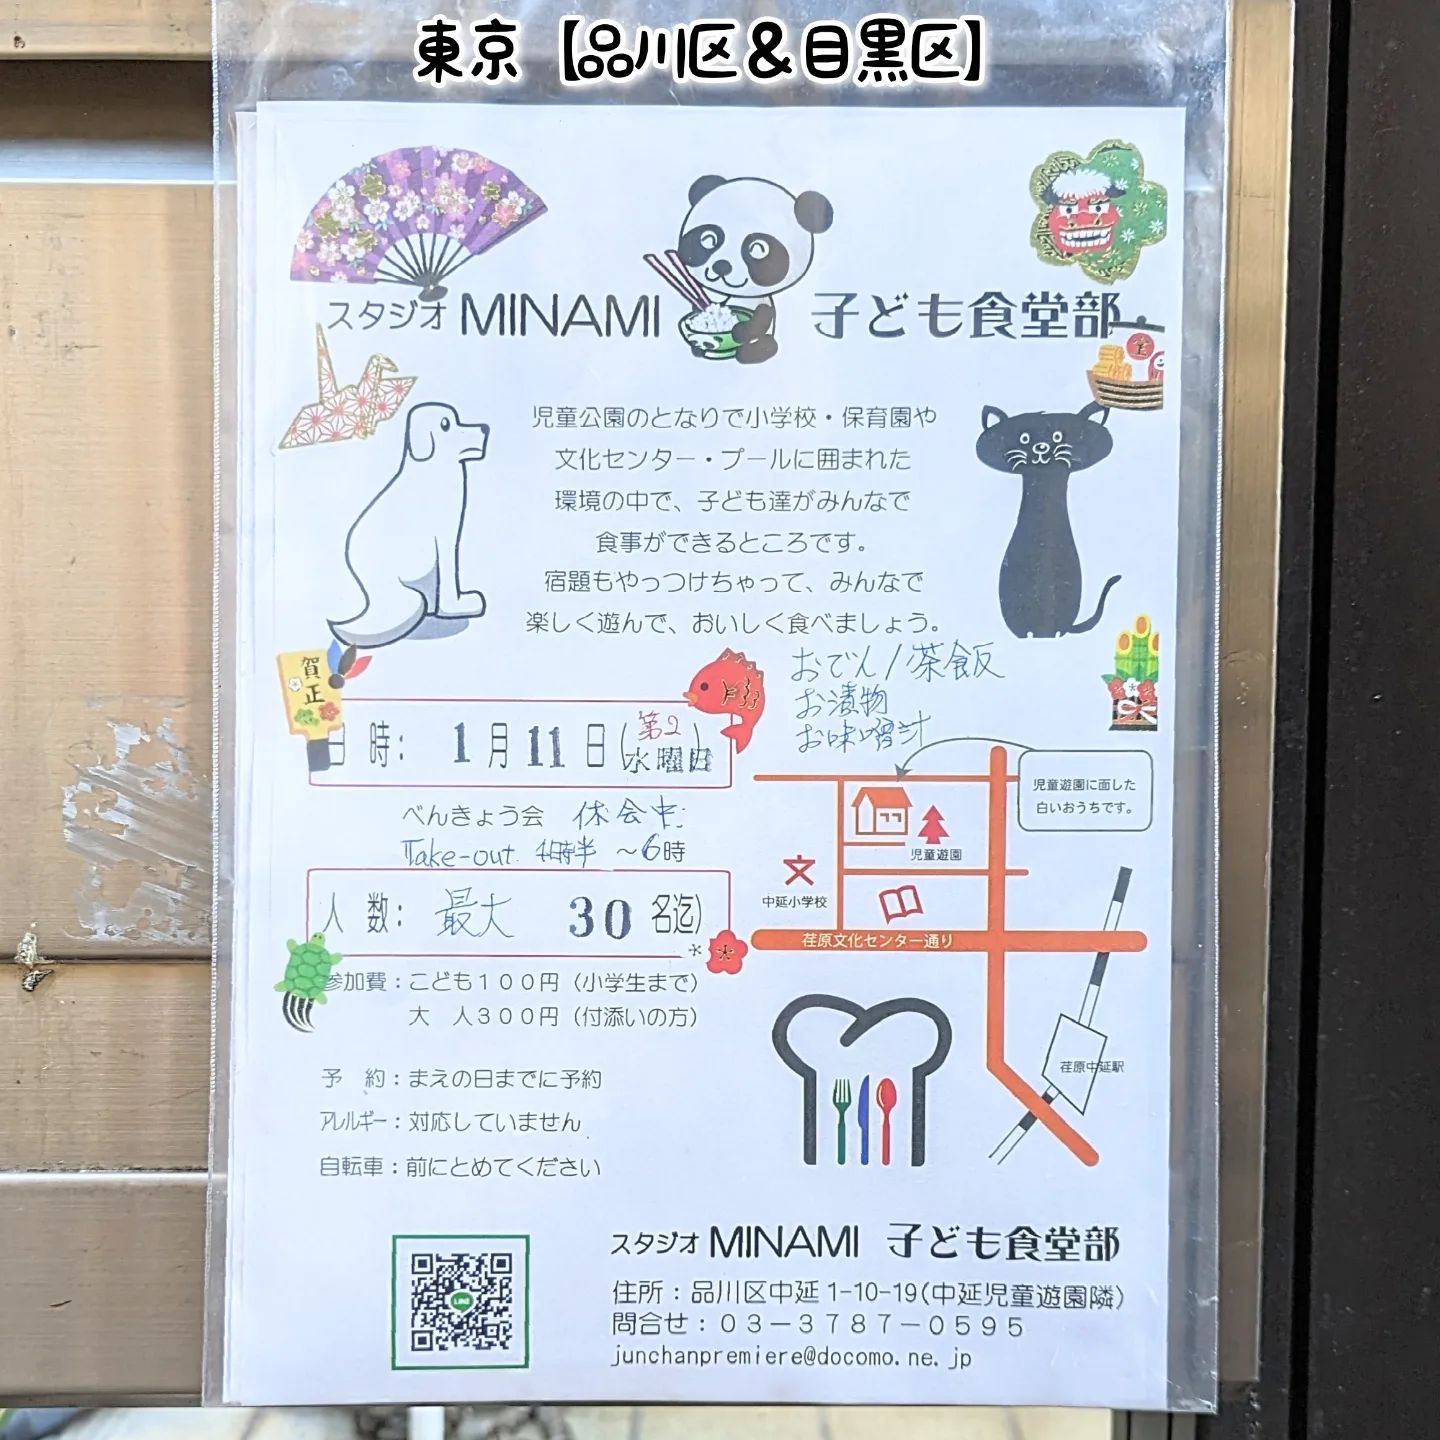 #武蔵小山グルメ情報 #子ども食堂 #スタジオminami子ども食堂部 子ども食堂発見！次回開催日は2023年1月11日（第2水曜日）でございます。ちびっ子達がお腹いっぱいになりますように！場所は、荏原文化センターや中延小学校の近くでございます。ちょっと見つけにくいかもしれません。武蔵小山近隣の子供たちへ寄付金や食品や物品の寄付をお考えの方は下記サイトが便利かもしれません！NPO法人Pista→http://pista.or.jp/品川こども食堂→https://shinashakyo.jp/kodomonet/【侍猫を応援】メインサイトも応援クリックお願いします！次の武蔵小山グルメ探しの励みになります！※メインサイトへの移動はプロフィールのURLが簡単！（地図あり）→ @musashikoyama.news →https://musashikoyama.samuraicat.jp/ 【案件＆情報】仕事の依頼やグルメ情報はお気軽にメッセージください！ #武蔵小山 #武蔵小山商店街 #武蔵小山グルメ #武蔵小山カフェ #西小山 #戸越銀座 #不動前 #碑文谷 #戸越 #中延 #荏原中延 #目黒本町 #品川 #品川区 #品川グルメ #目黒 #目黒区 #目黒グルメ #東京 #東京グルメ #tokyofood #tokyo #子ども食堂 #品川区子ども食堂 #スタジオminami #こども食堂 #品川区こども食堂